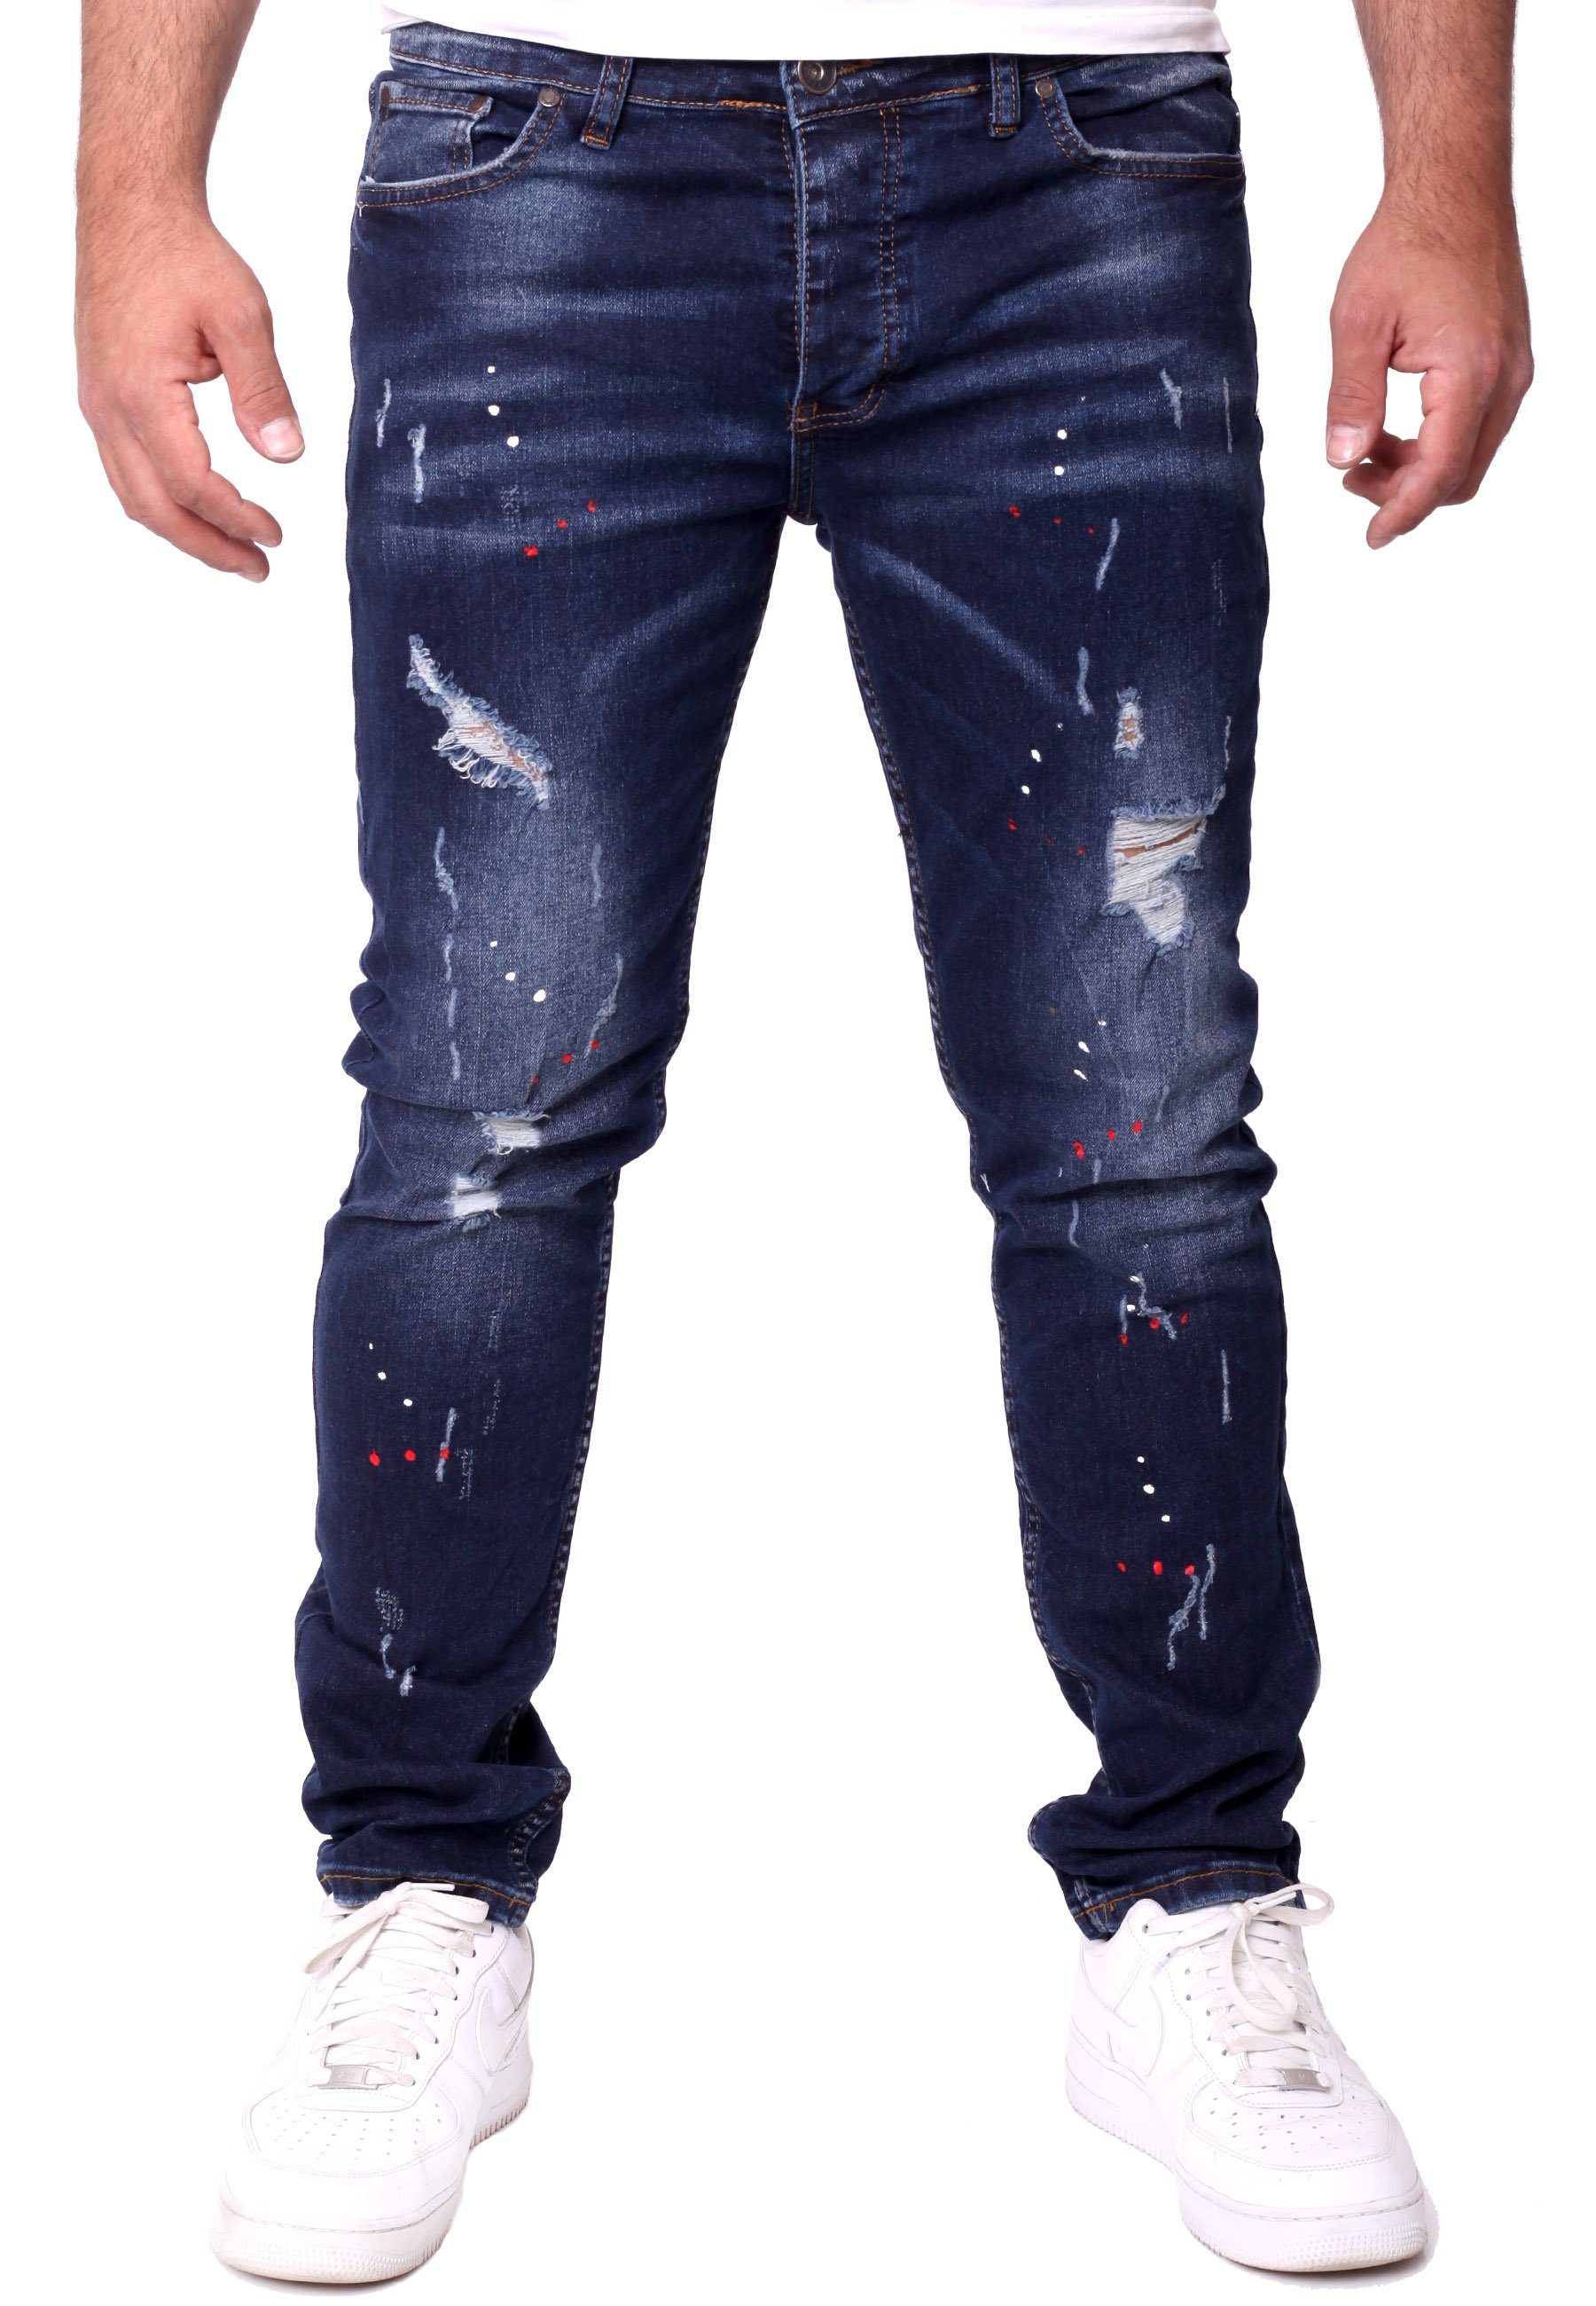 Denim Jeans Destroyed Fit Slim Herren Reslad Stretch Color-Splashes Reslad Destroyed Destroyed-Jeans Männer-Hose dunkelblau Jeanshose Jeanshose